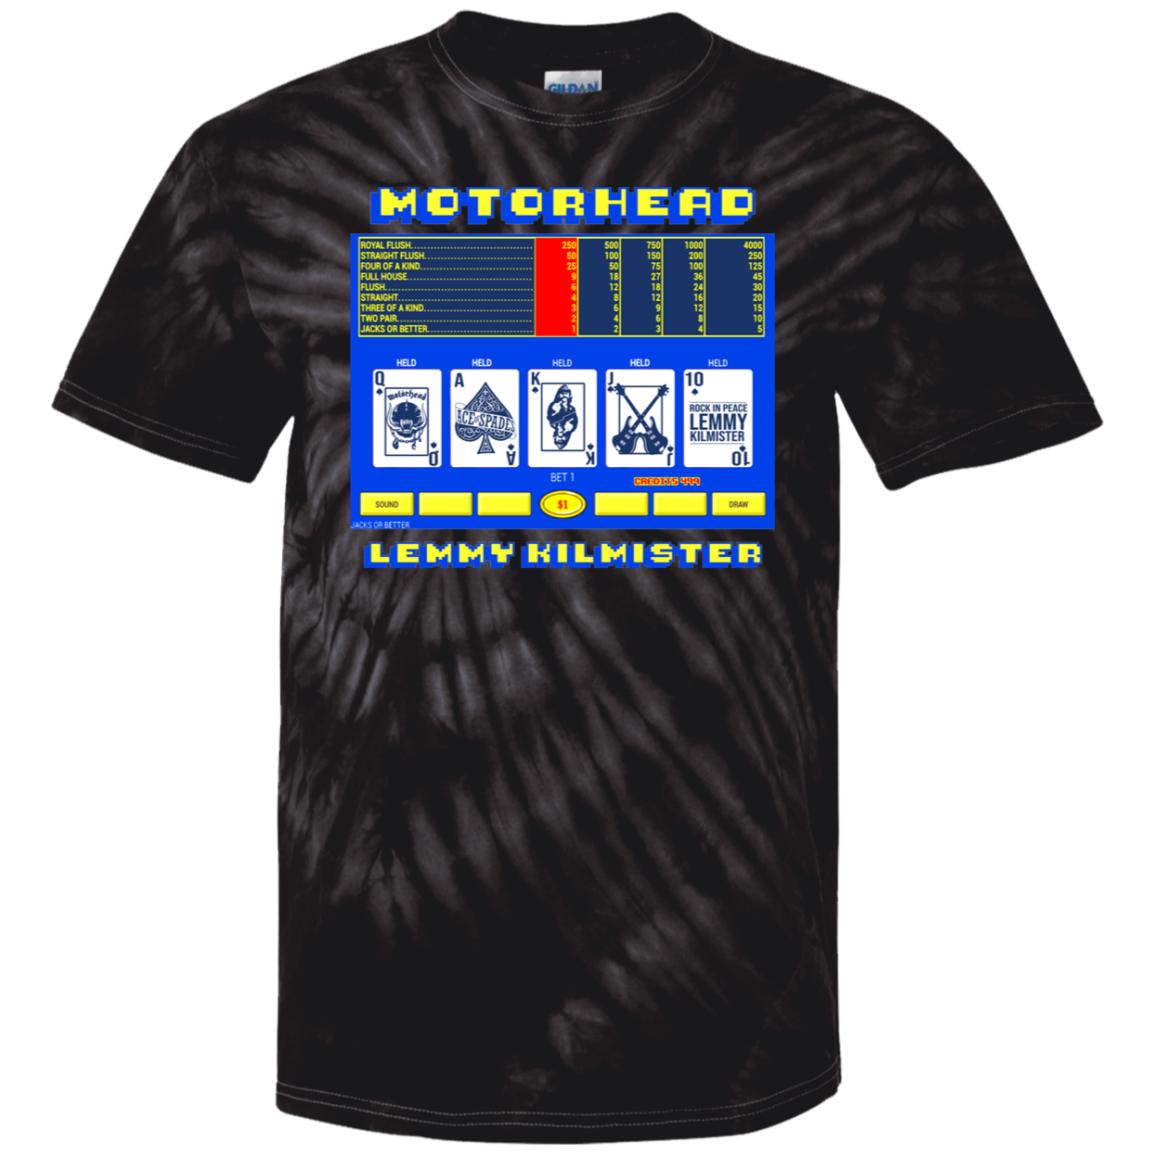 ArtichokeUSA Custom Design. Motorhead's Lemmy Kilmister's Favorite Video Poker Machine. Rock in Peace! Youth Tie Dye T-Shirt